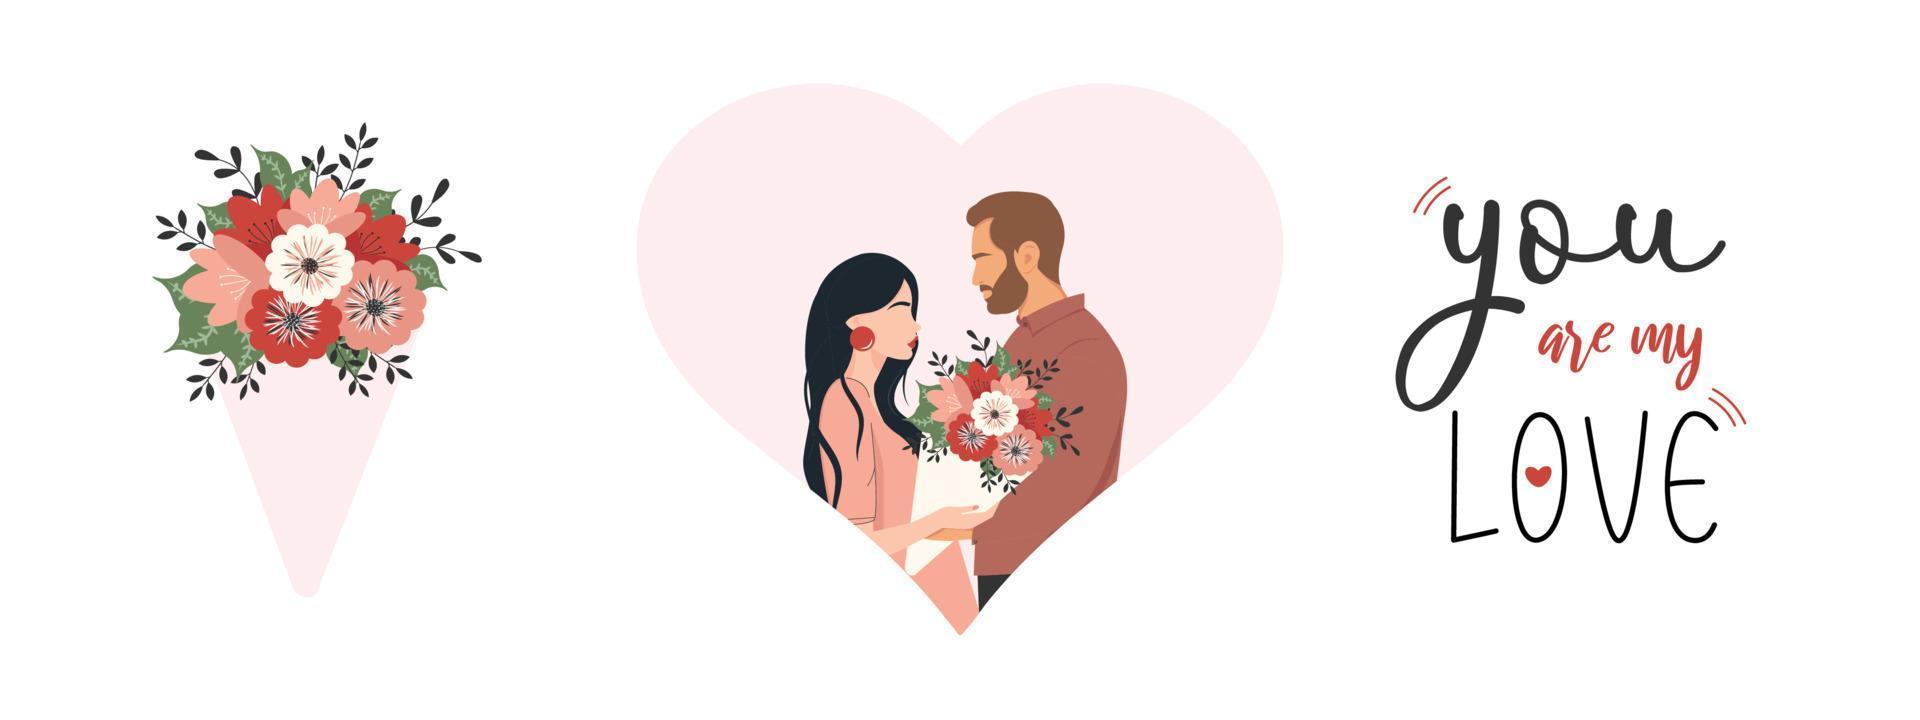 en uppsättning illustrationer på temat kärlek. ett lyckligt förälskat par. blombukett. älskare som firar en romantisk dejt. text. vektor